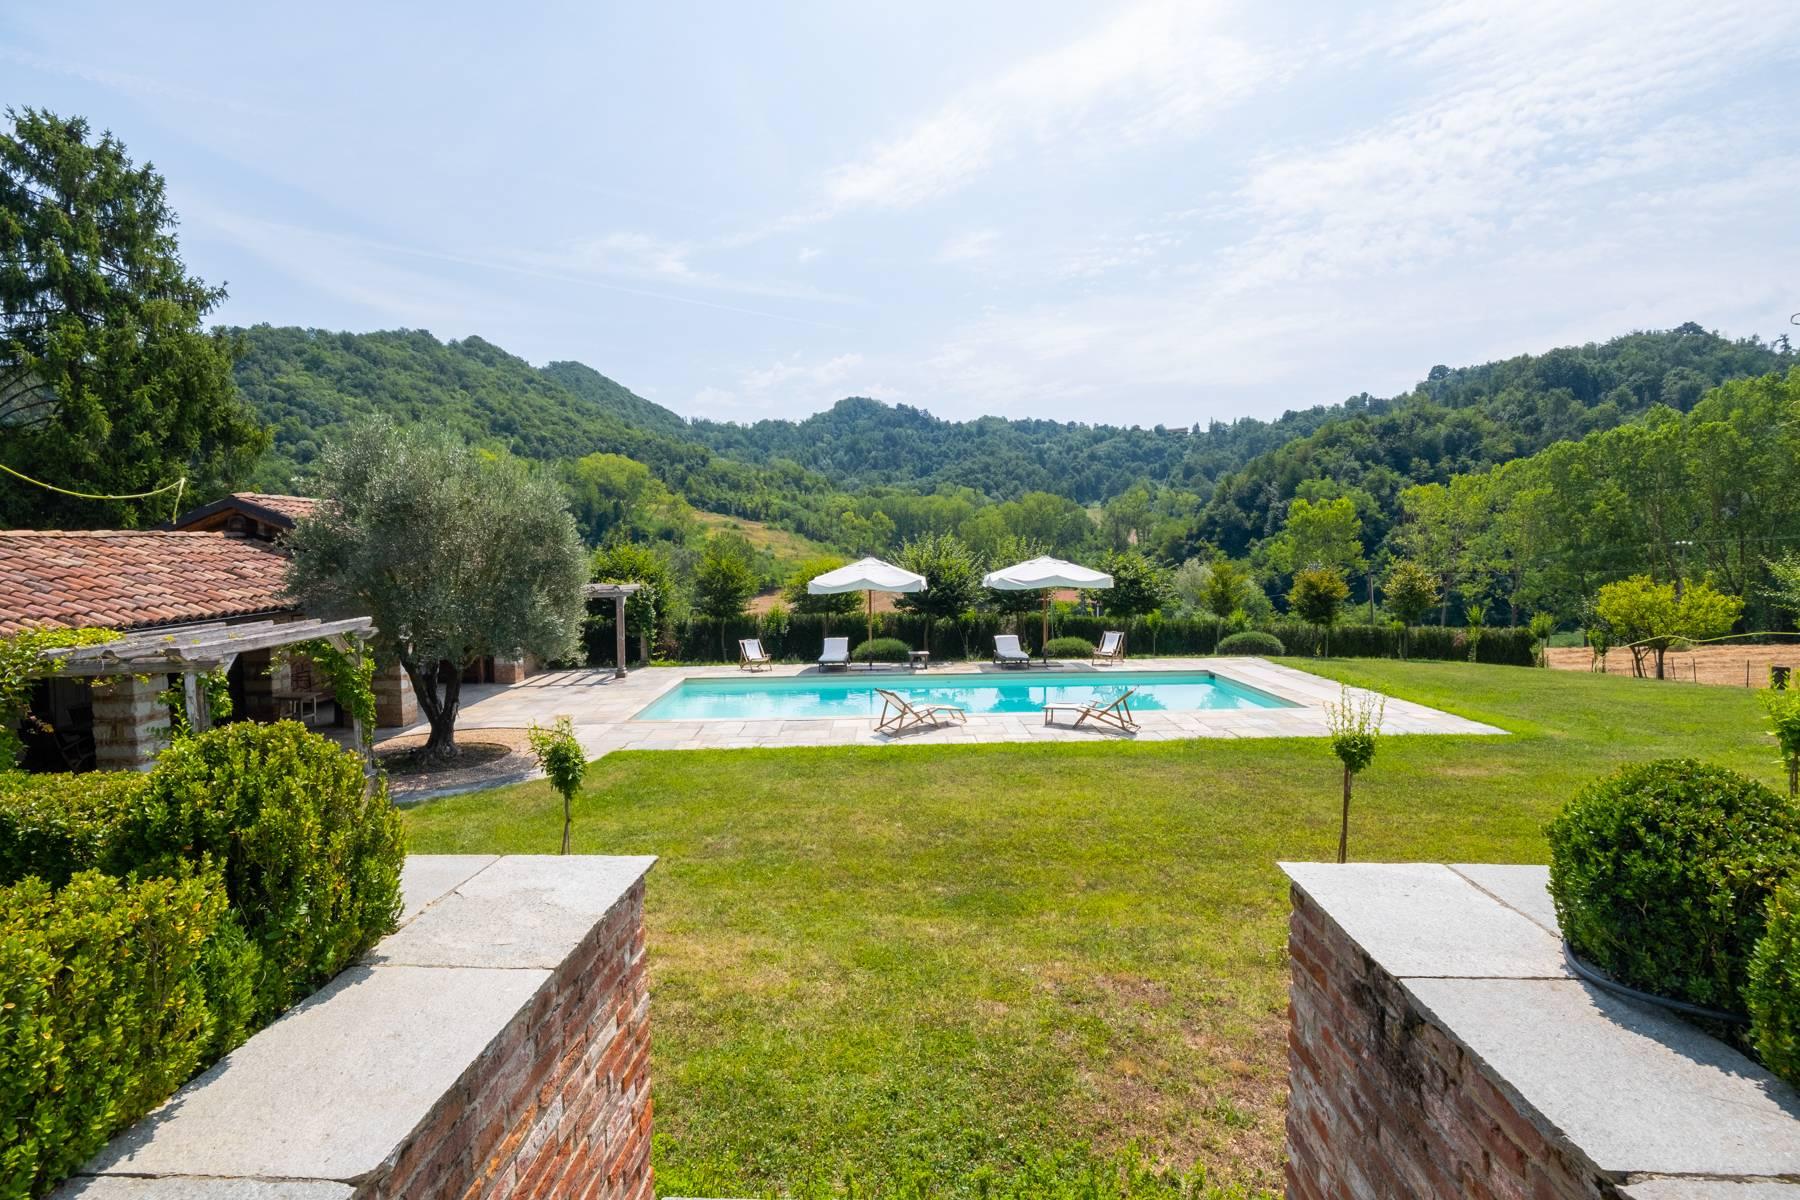 Affascinante casale con piscina nel verde delle colline del Monferrato - 2